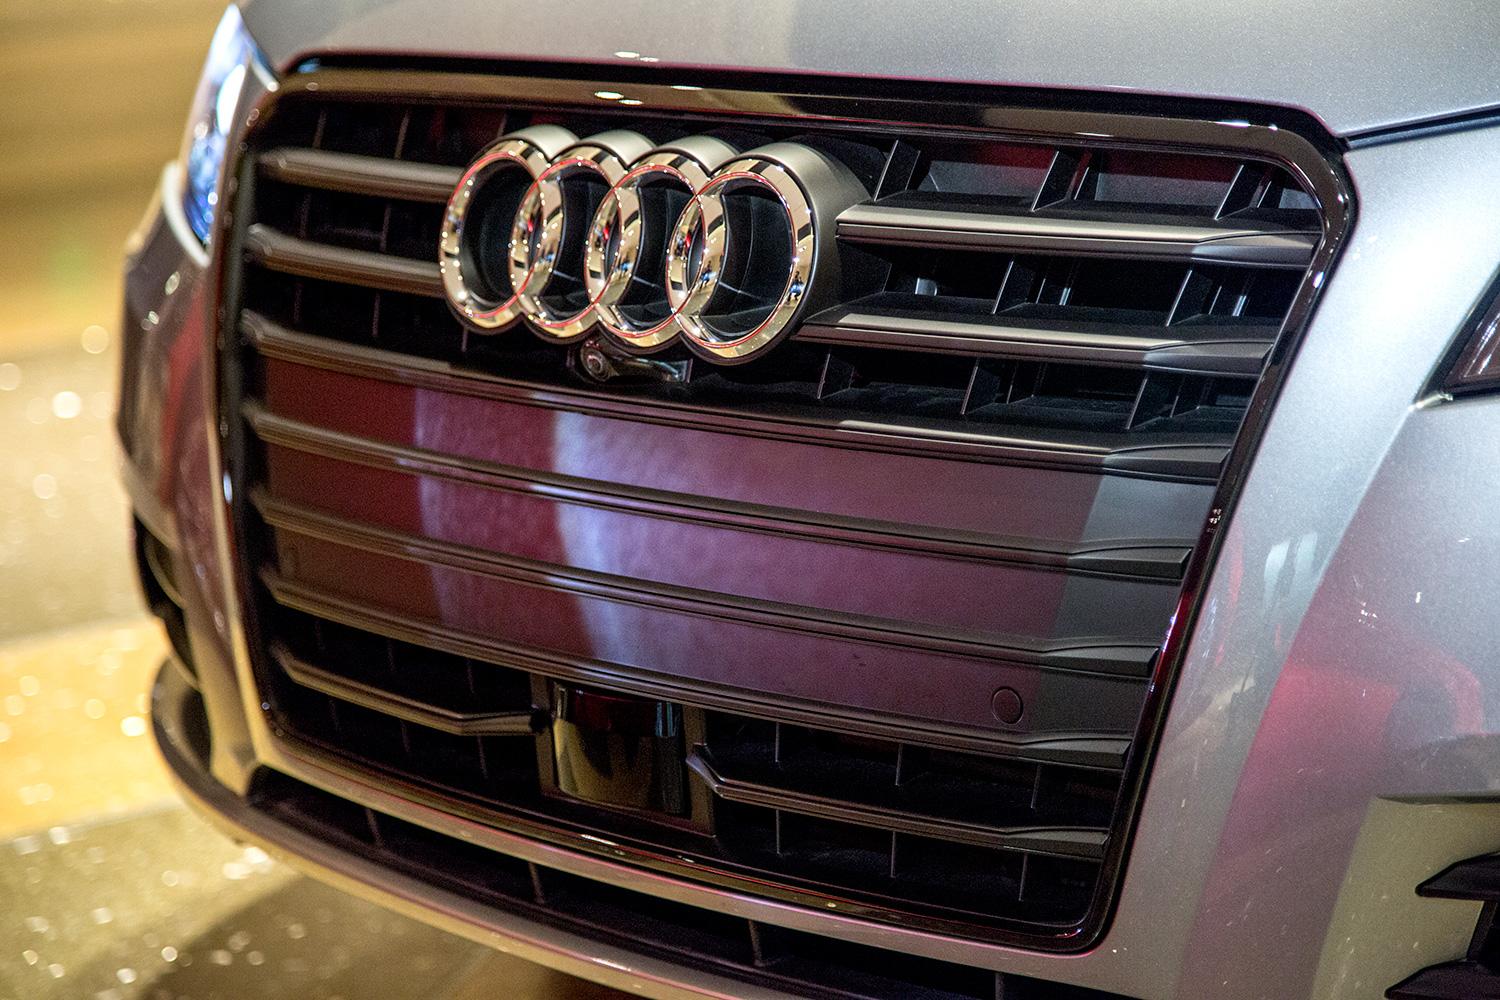 Audi A7 Autonomous front grill